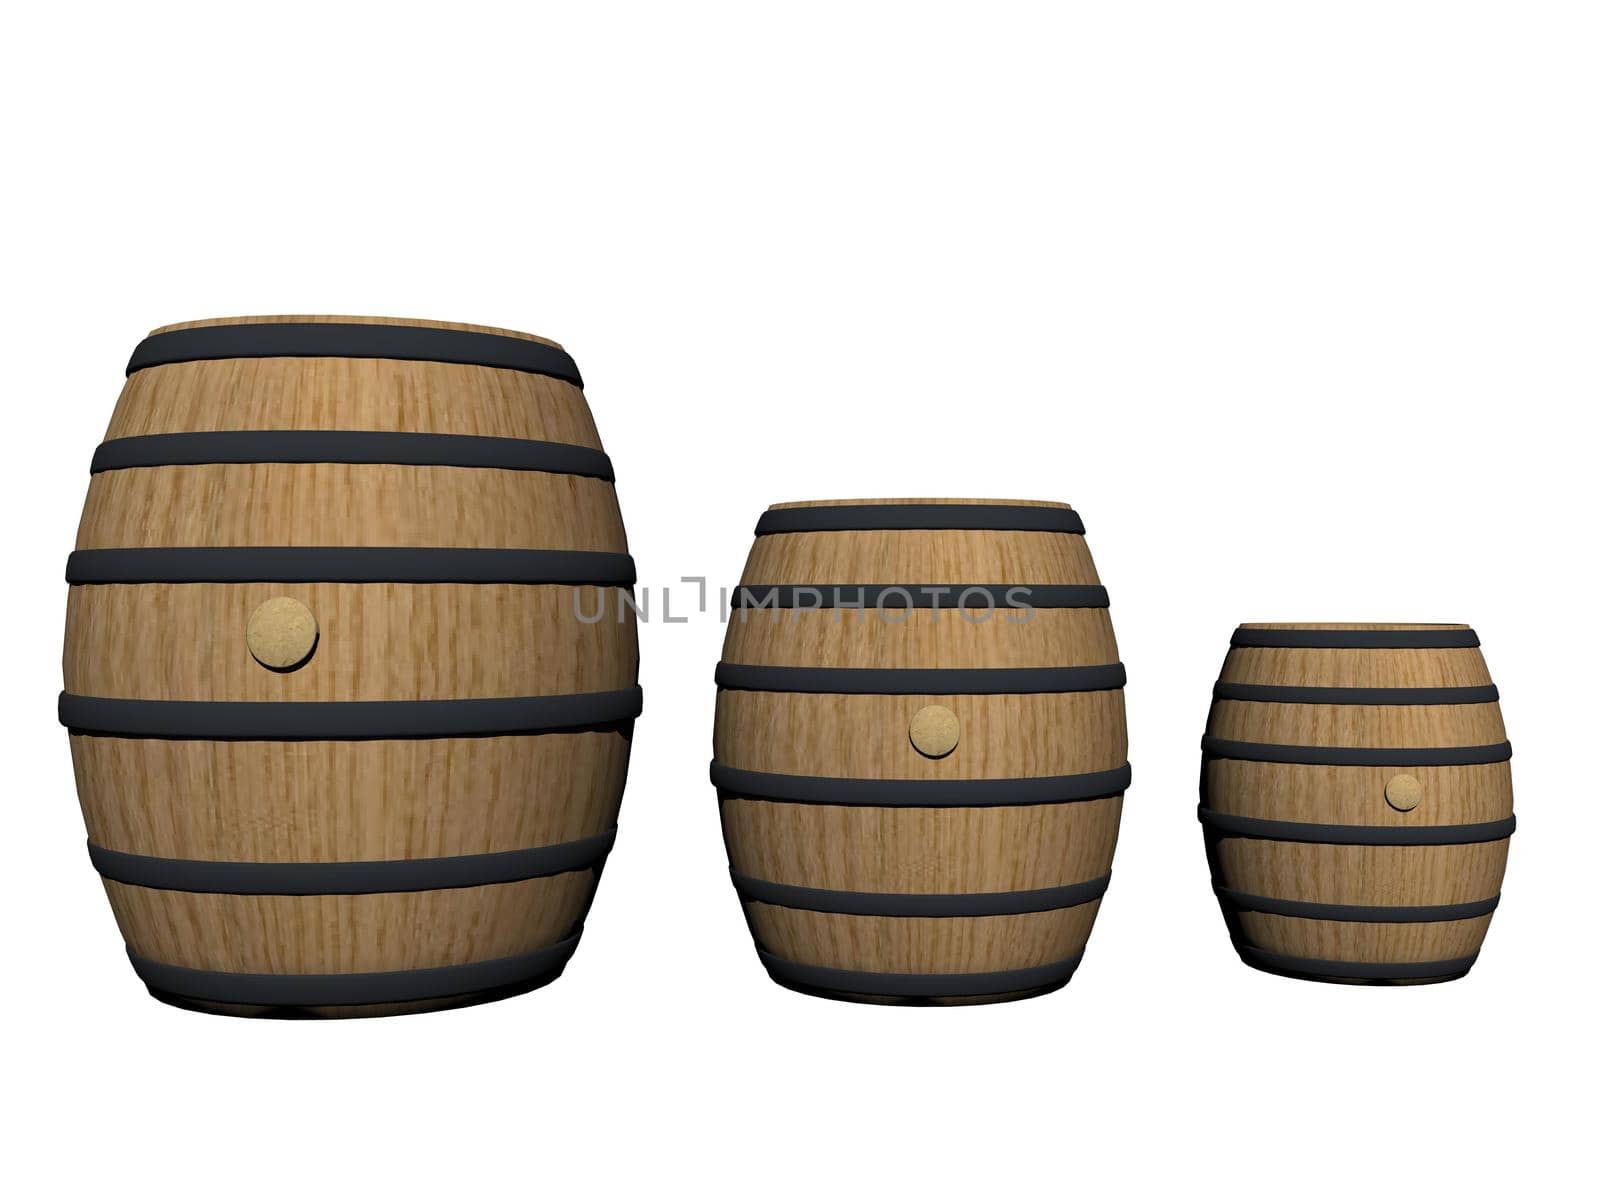 three wine barrels - 3d render by mariephotos